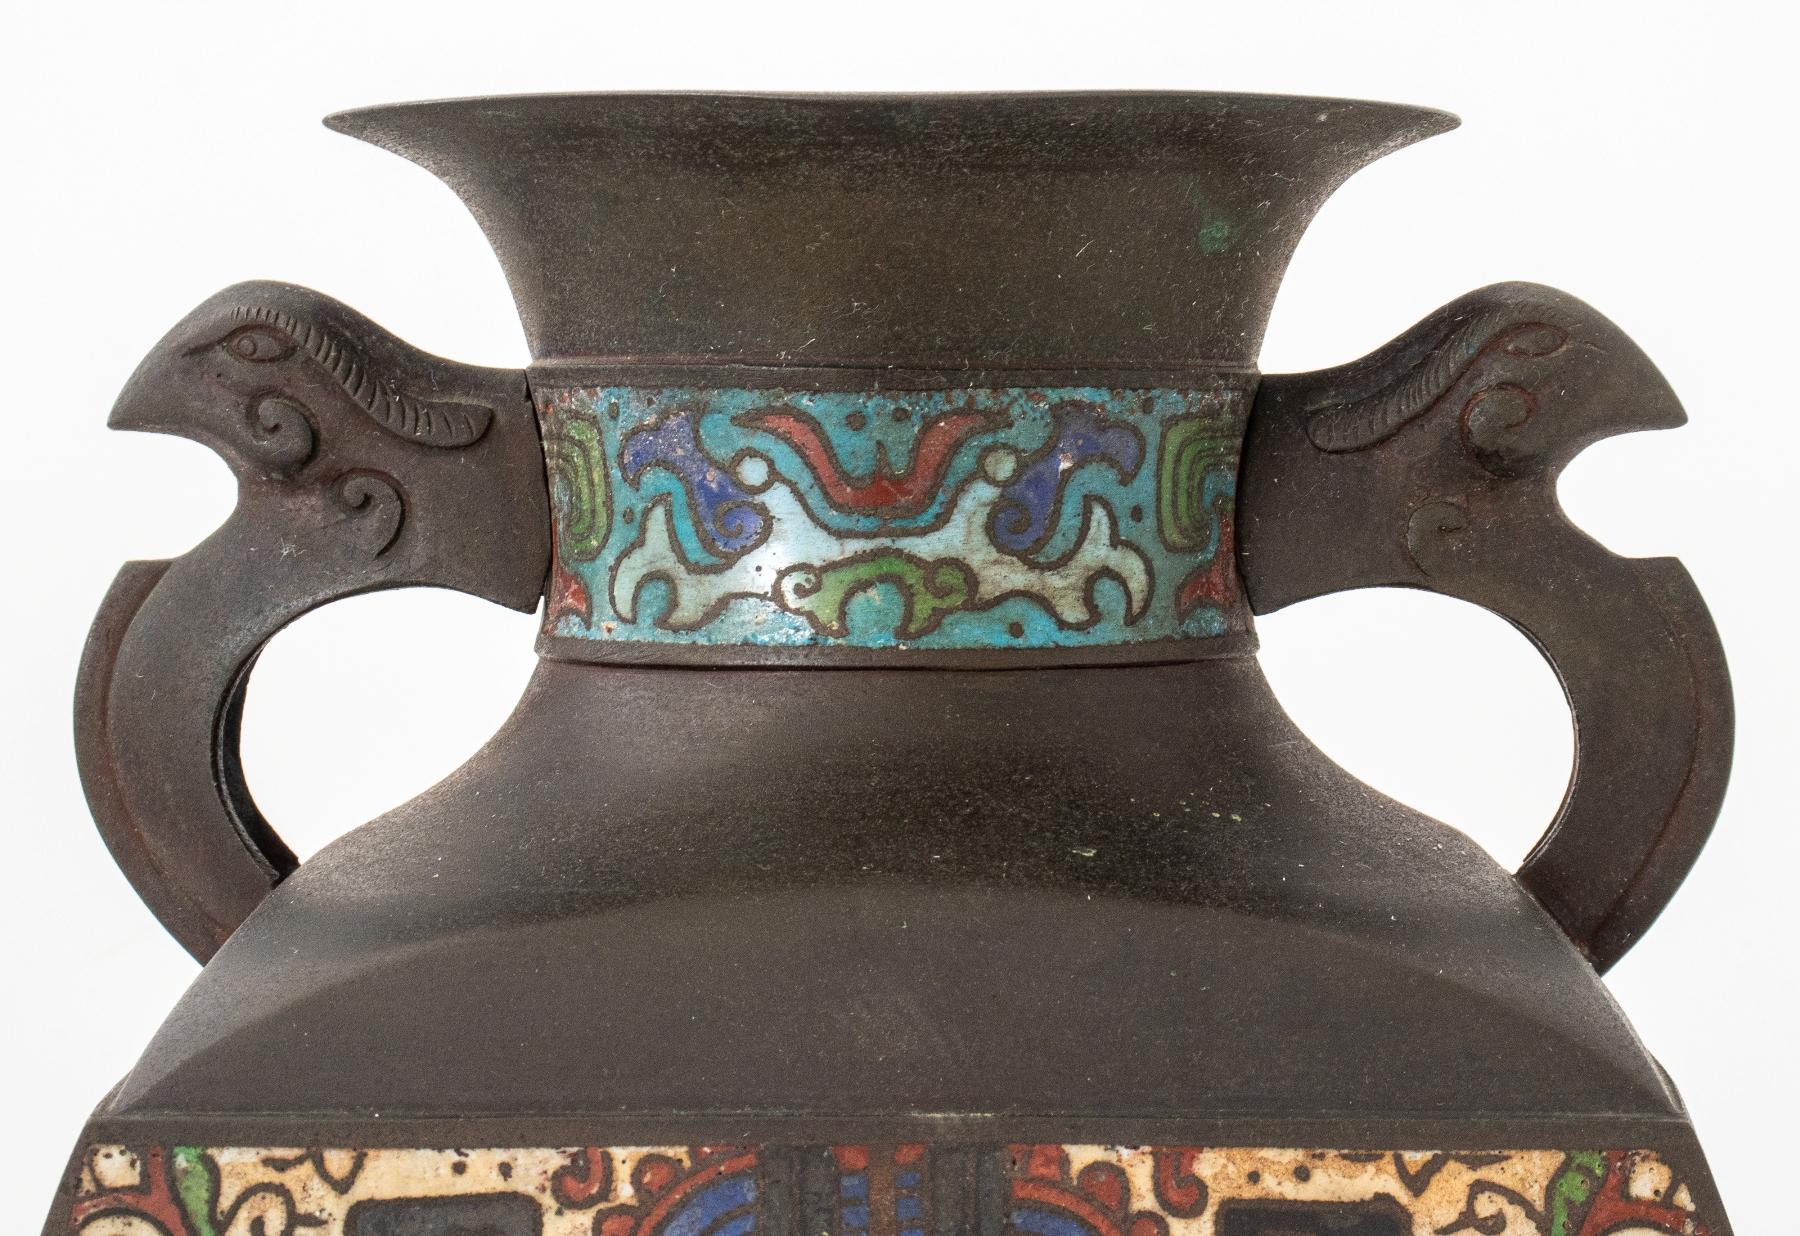 Japanische Cloisonné-emaillierte Bronzevase im chinesischen Stil mit vier Seiten und Kaninchenhenkeln, die Seiten sind in Nachahmung von Beispielen aus der Shang-Zeit emailliert.

Abmessungen: 14,25